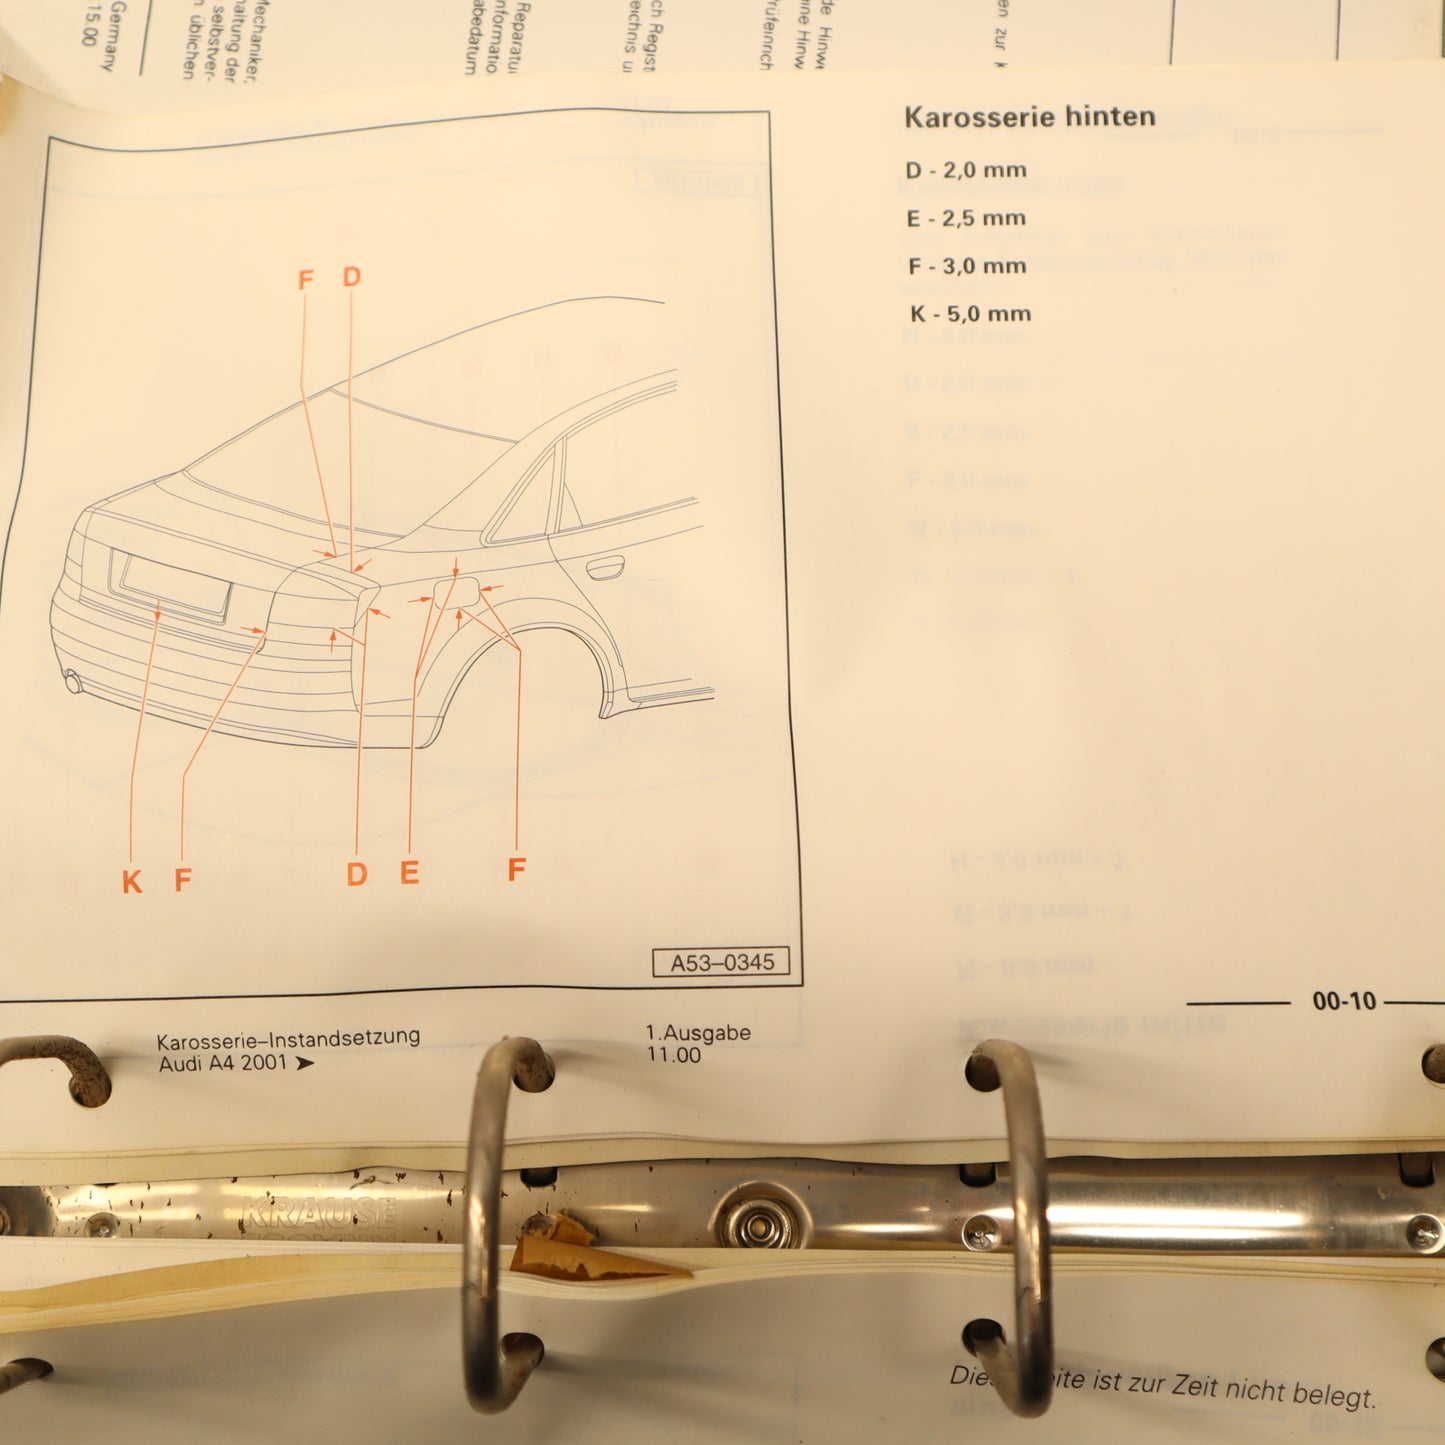 Reparaturleitfaden Audi A4 2001 Karosserie- Instandsetzung, Handbuch